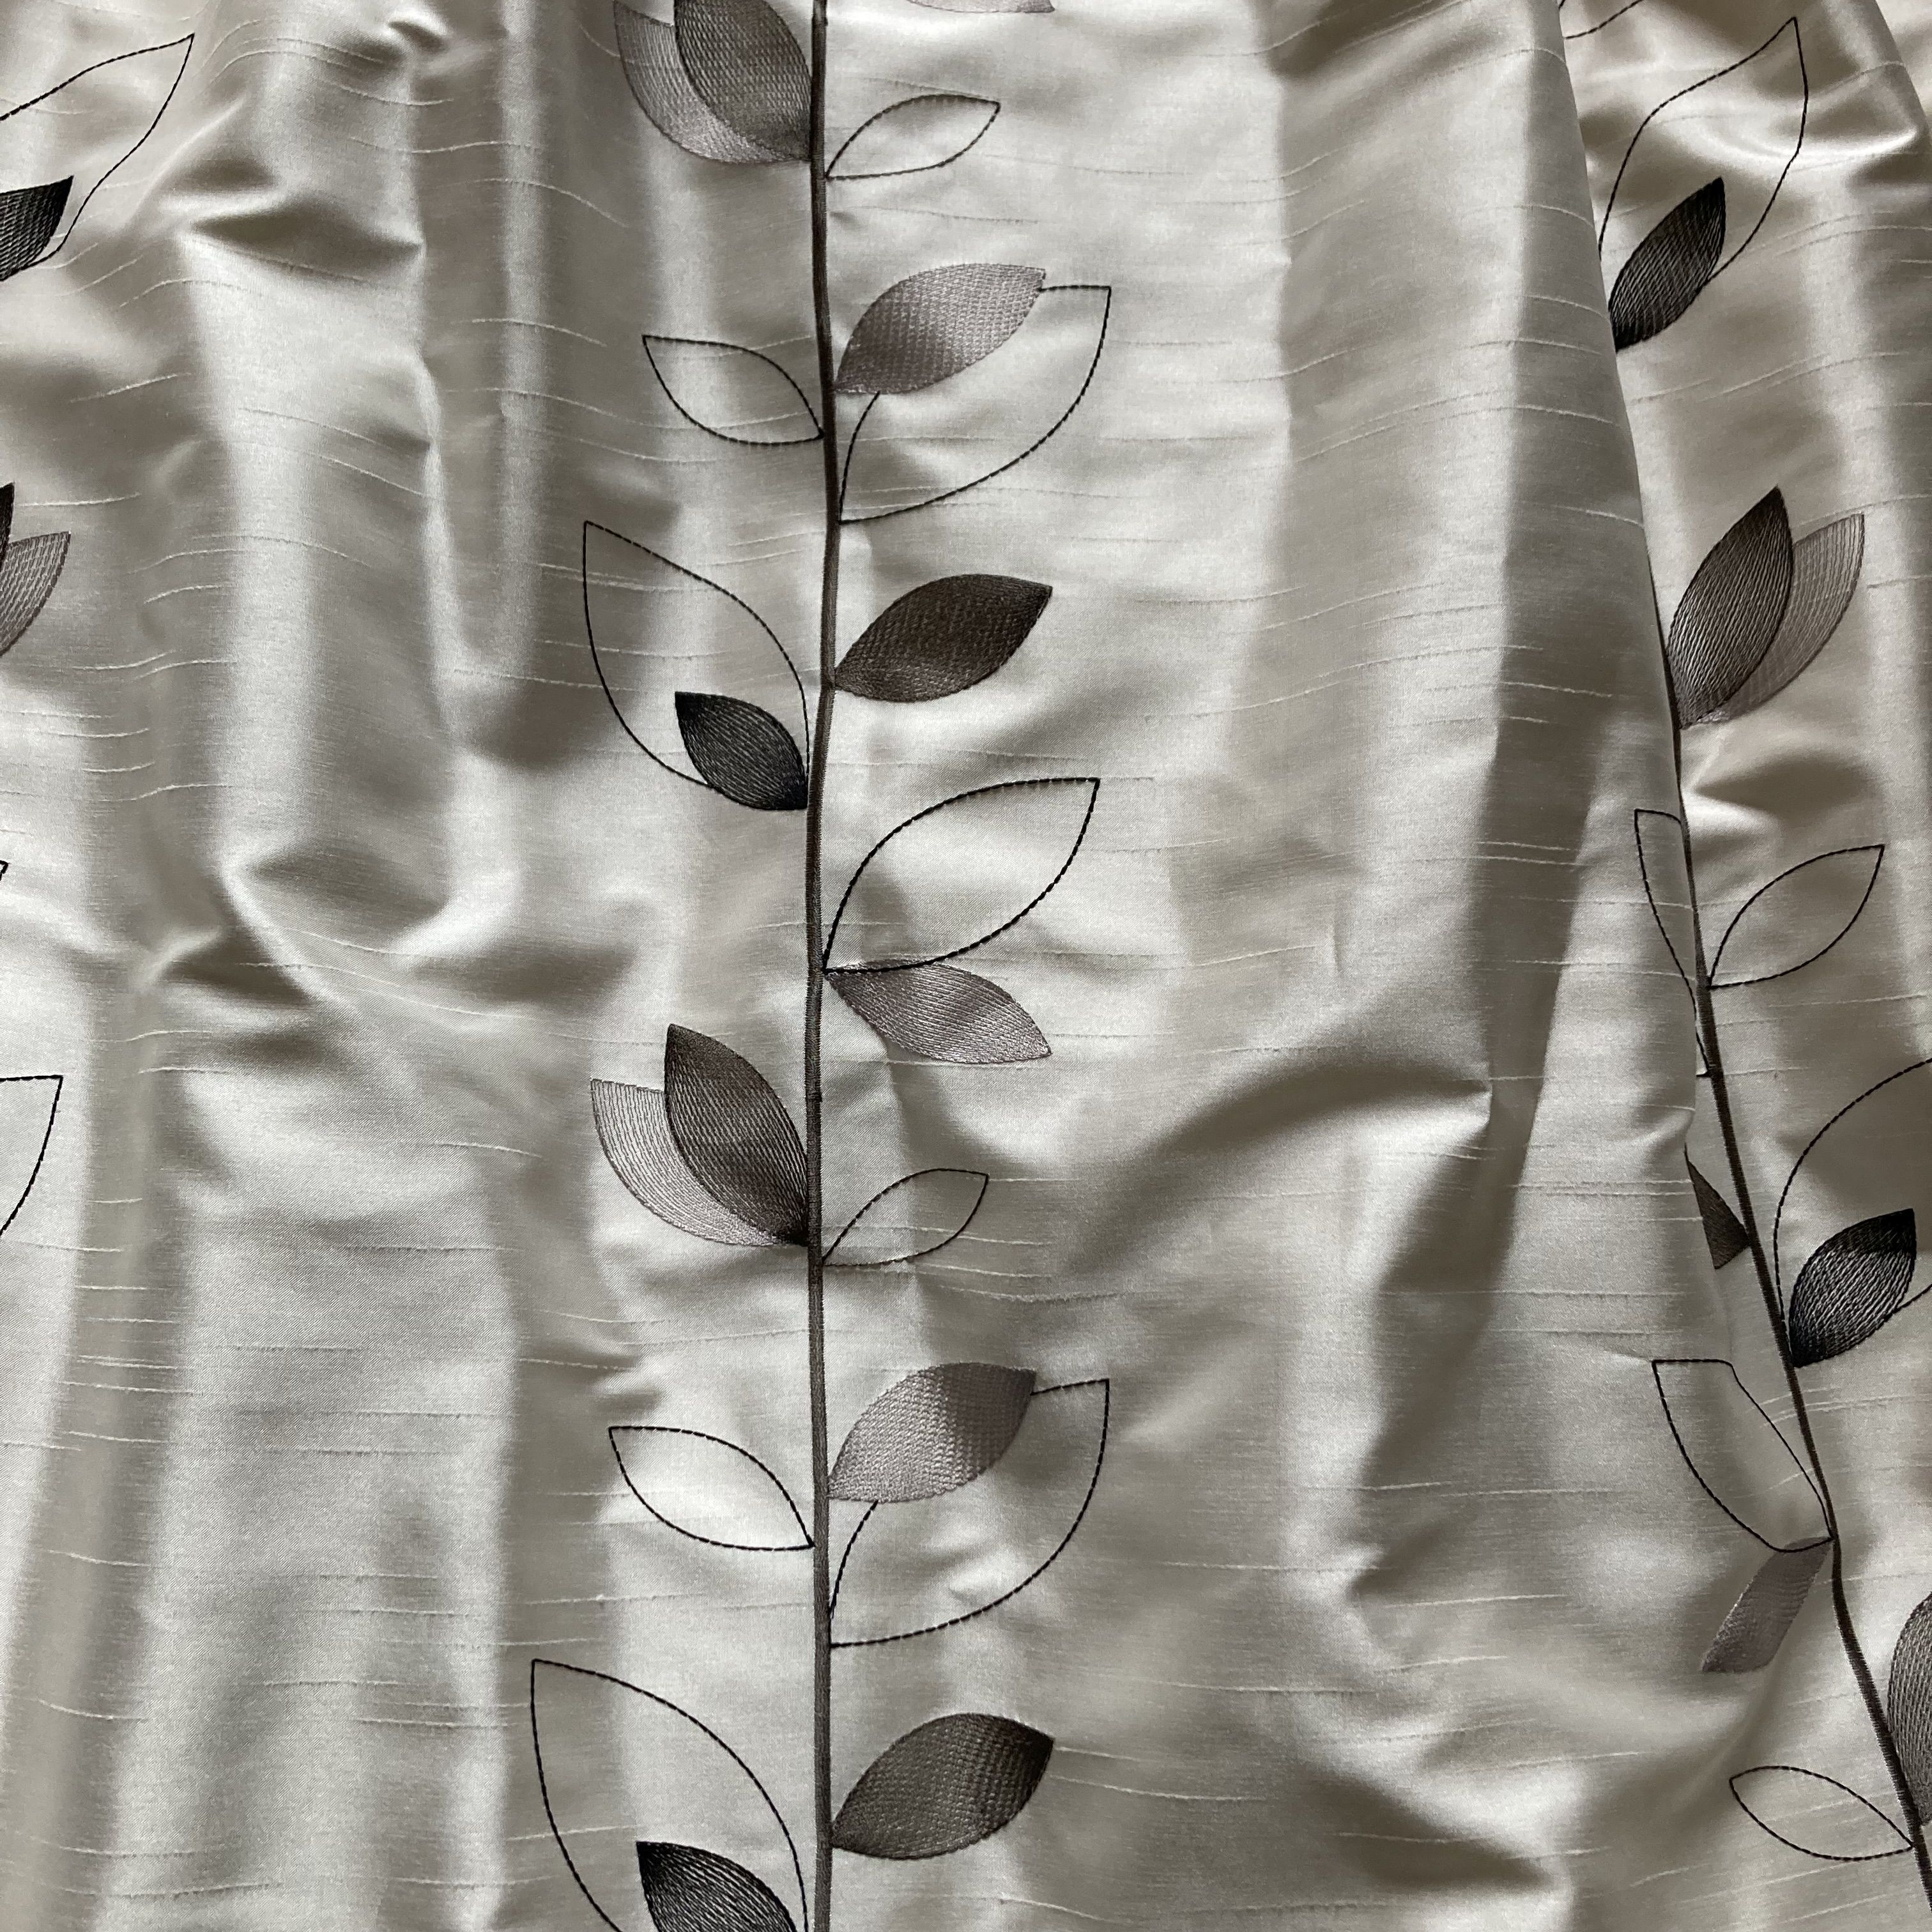 Silk Like Cream Curtains with Pretty Pewter Leaf Design 